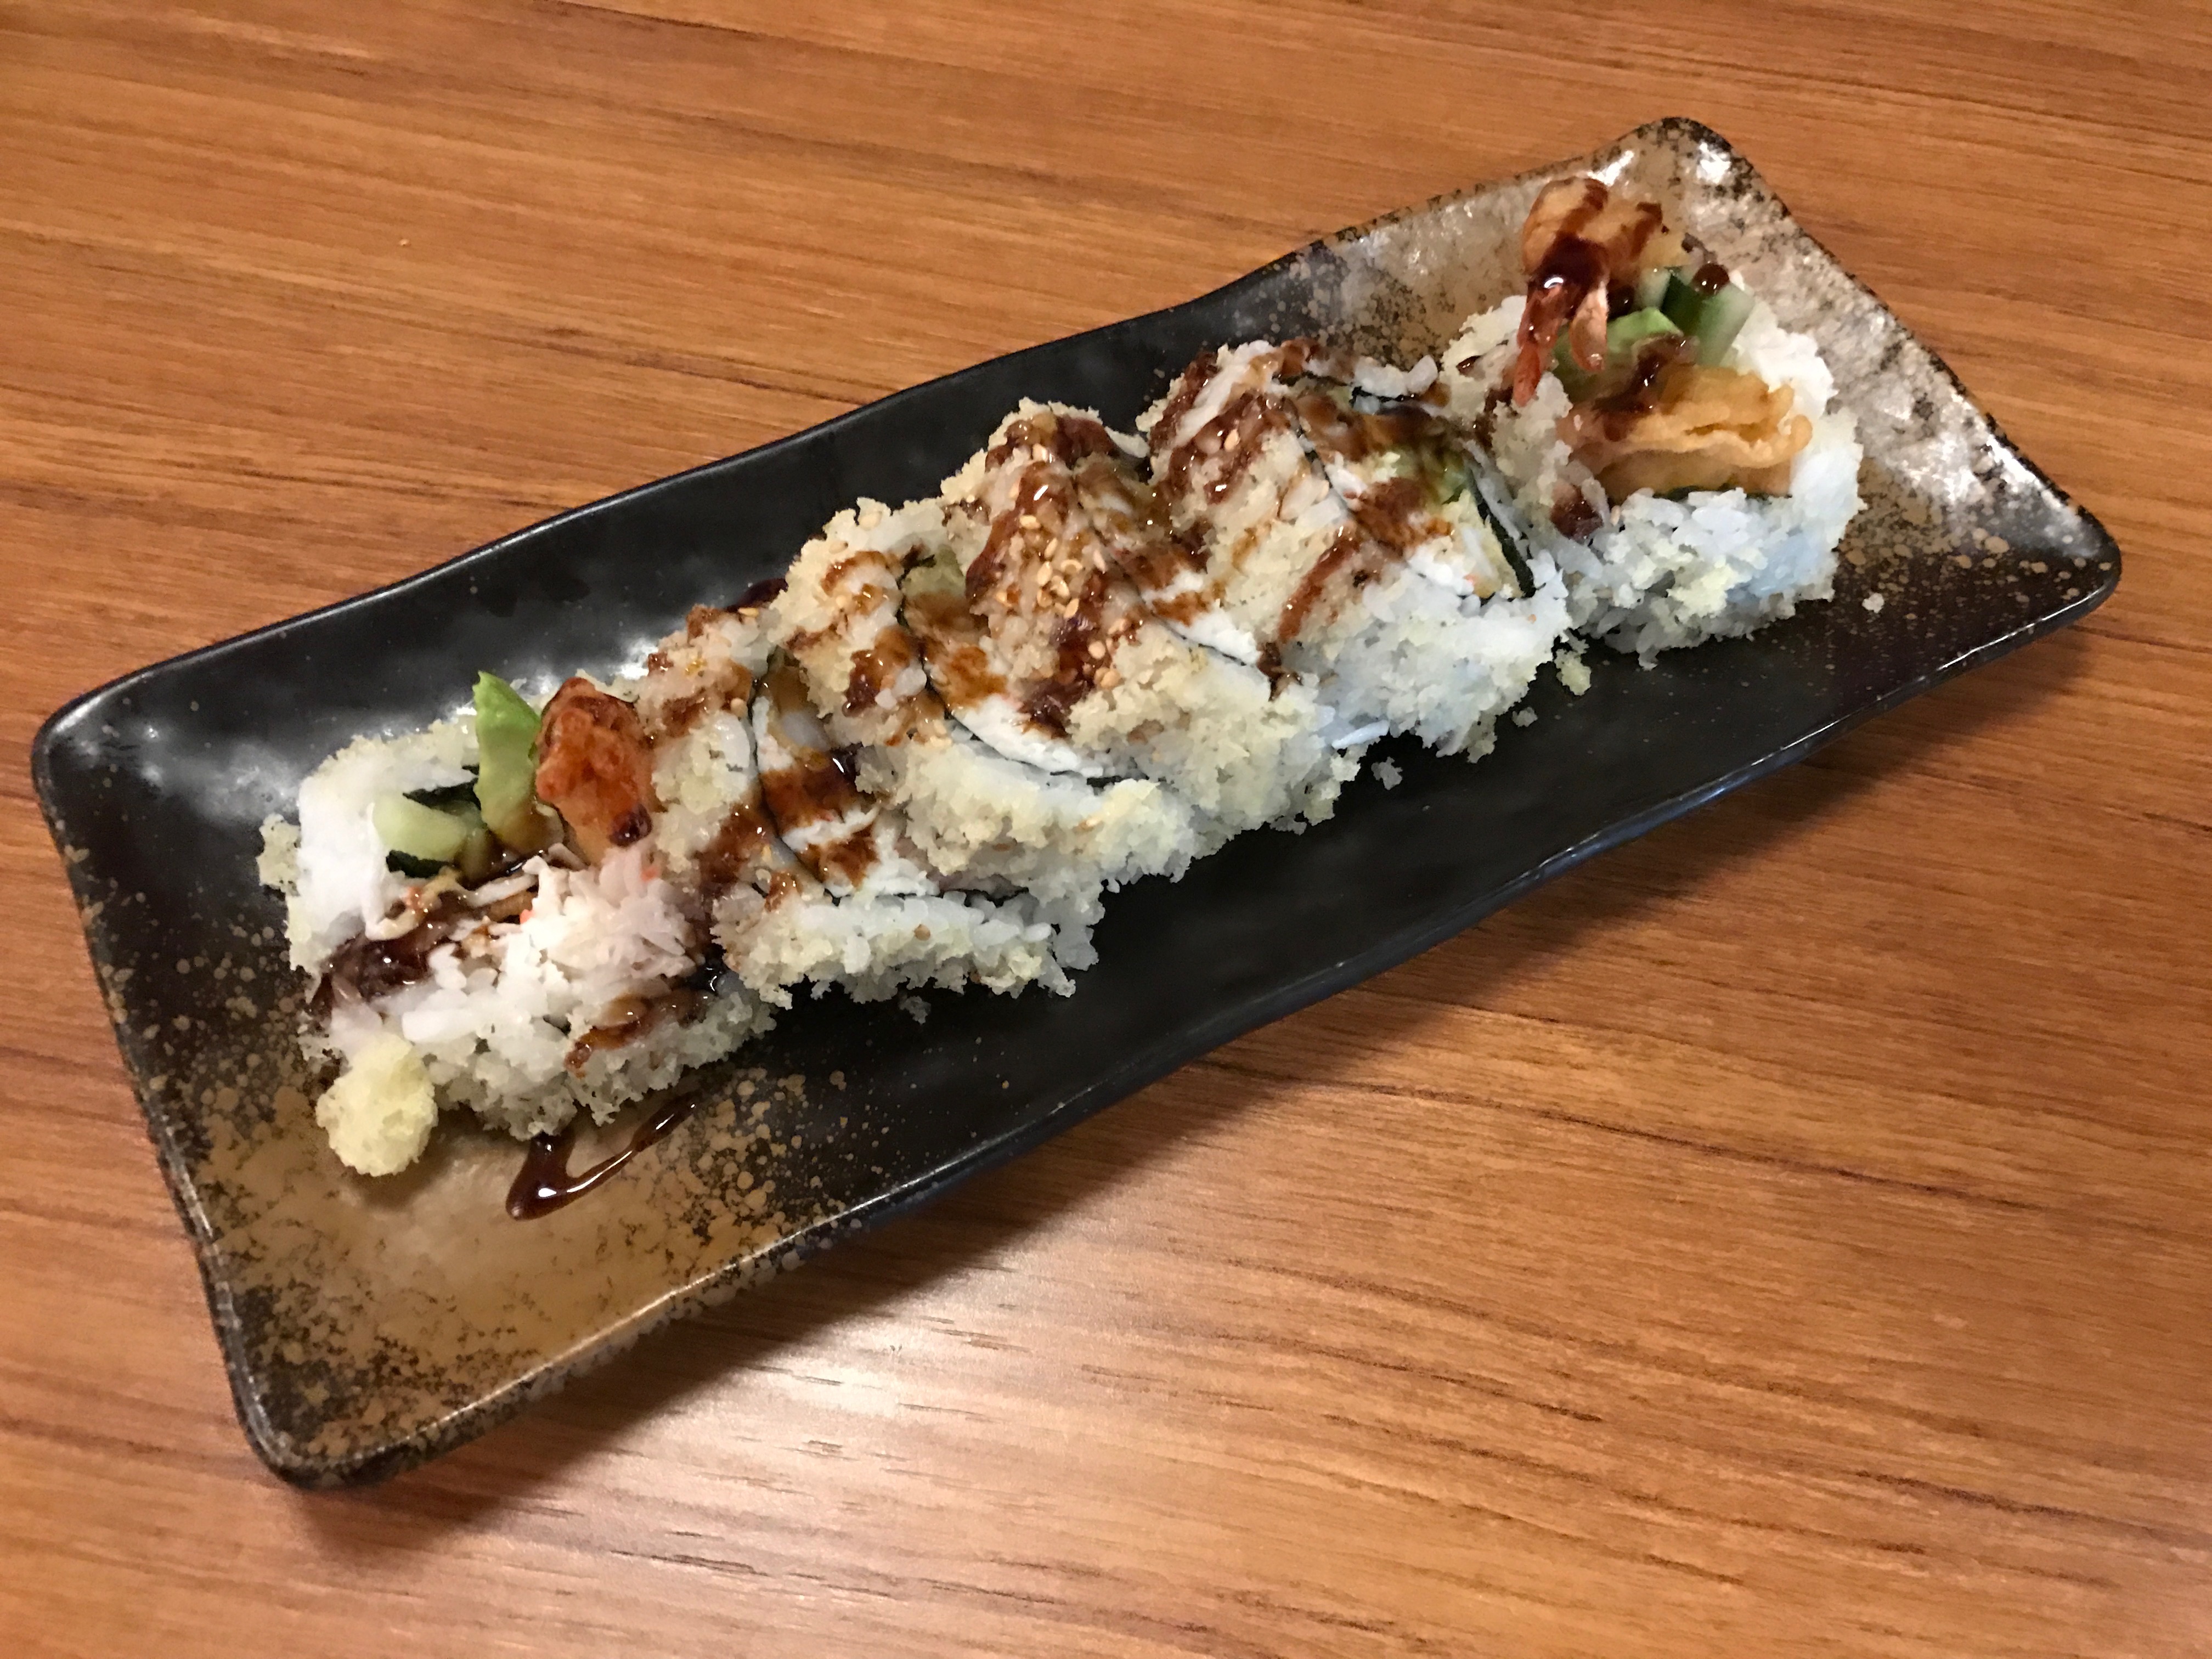 shrmp tempura roll